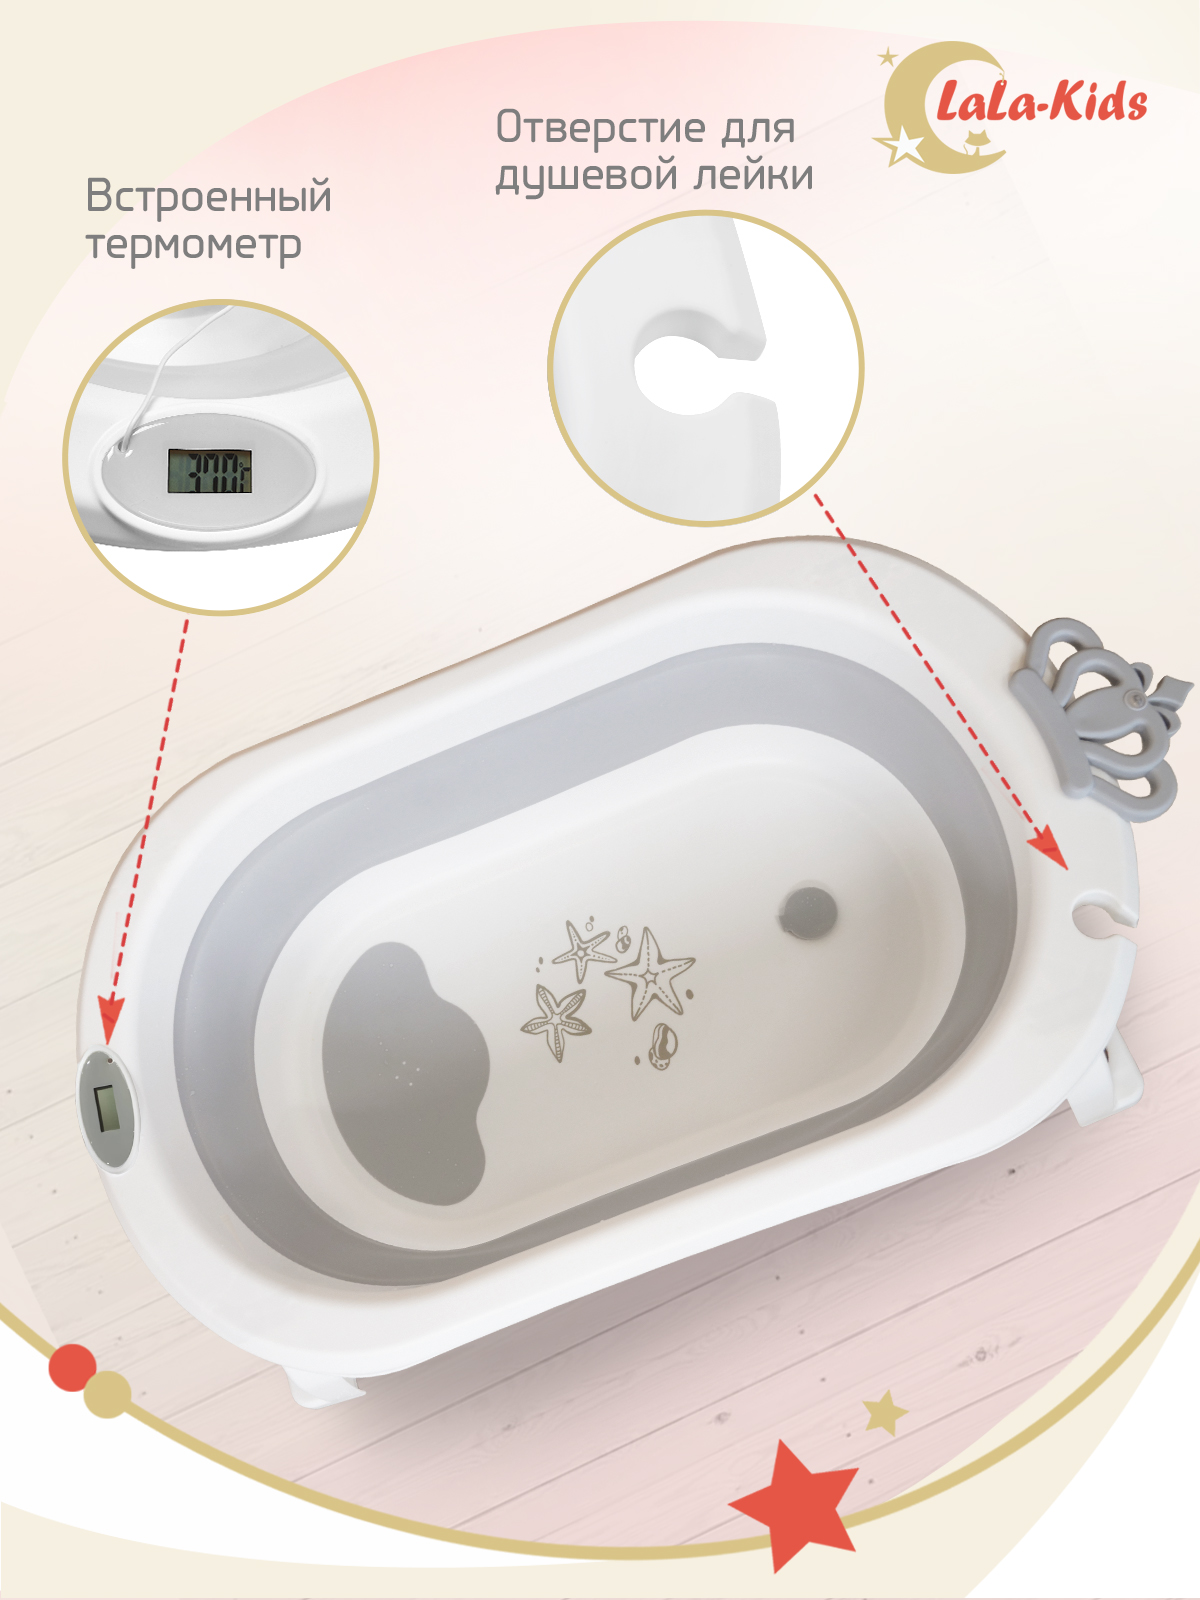 Детская ванночка с термометром LaLa-Kids складная с матрасиком для купания новорожденных - фото 8